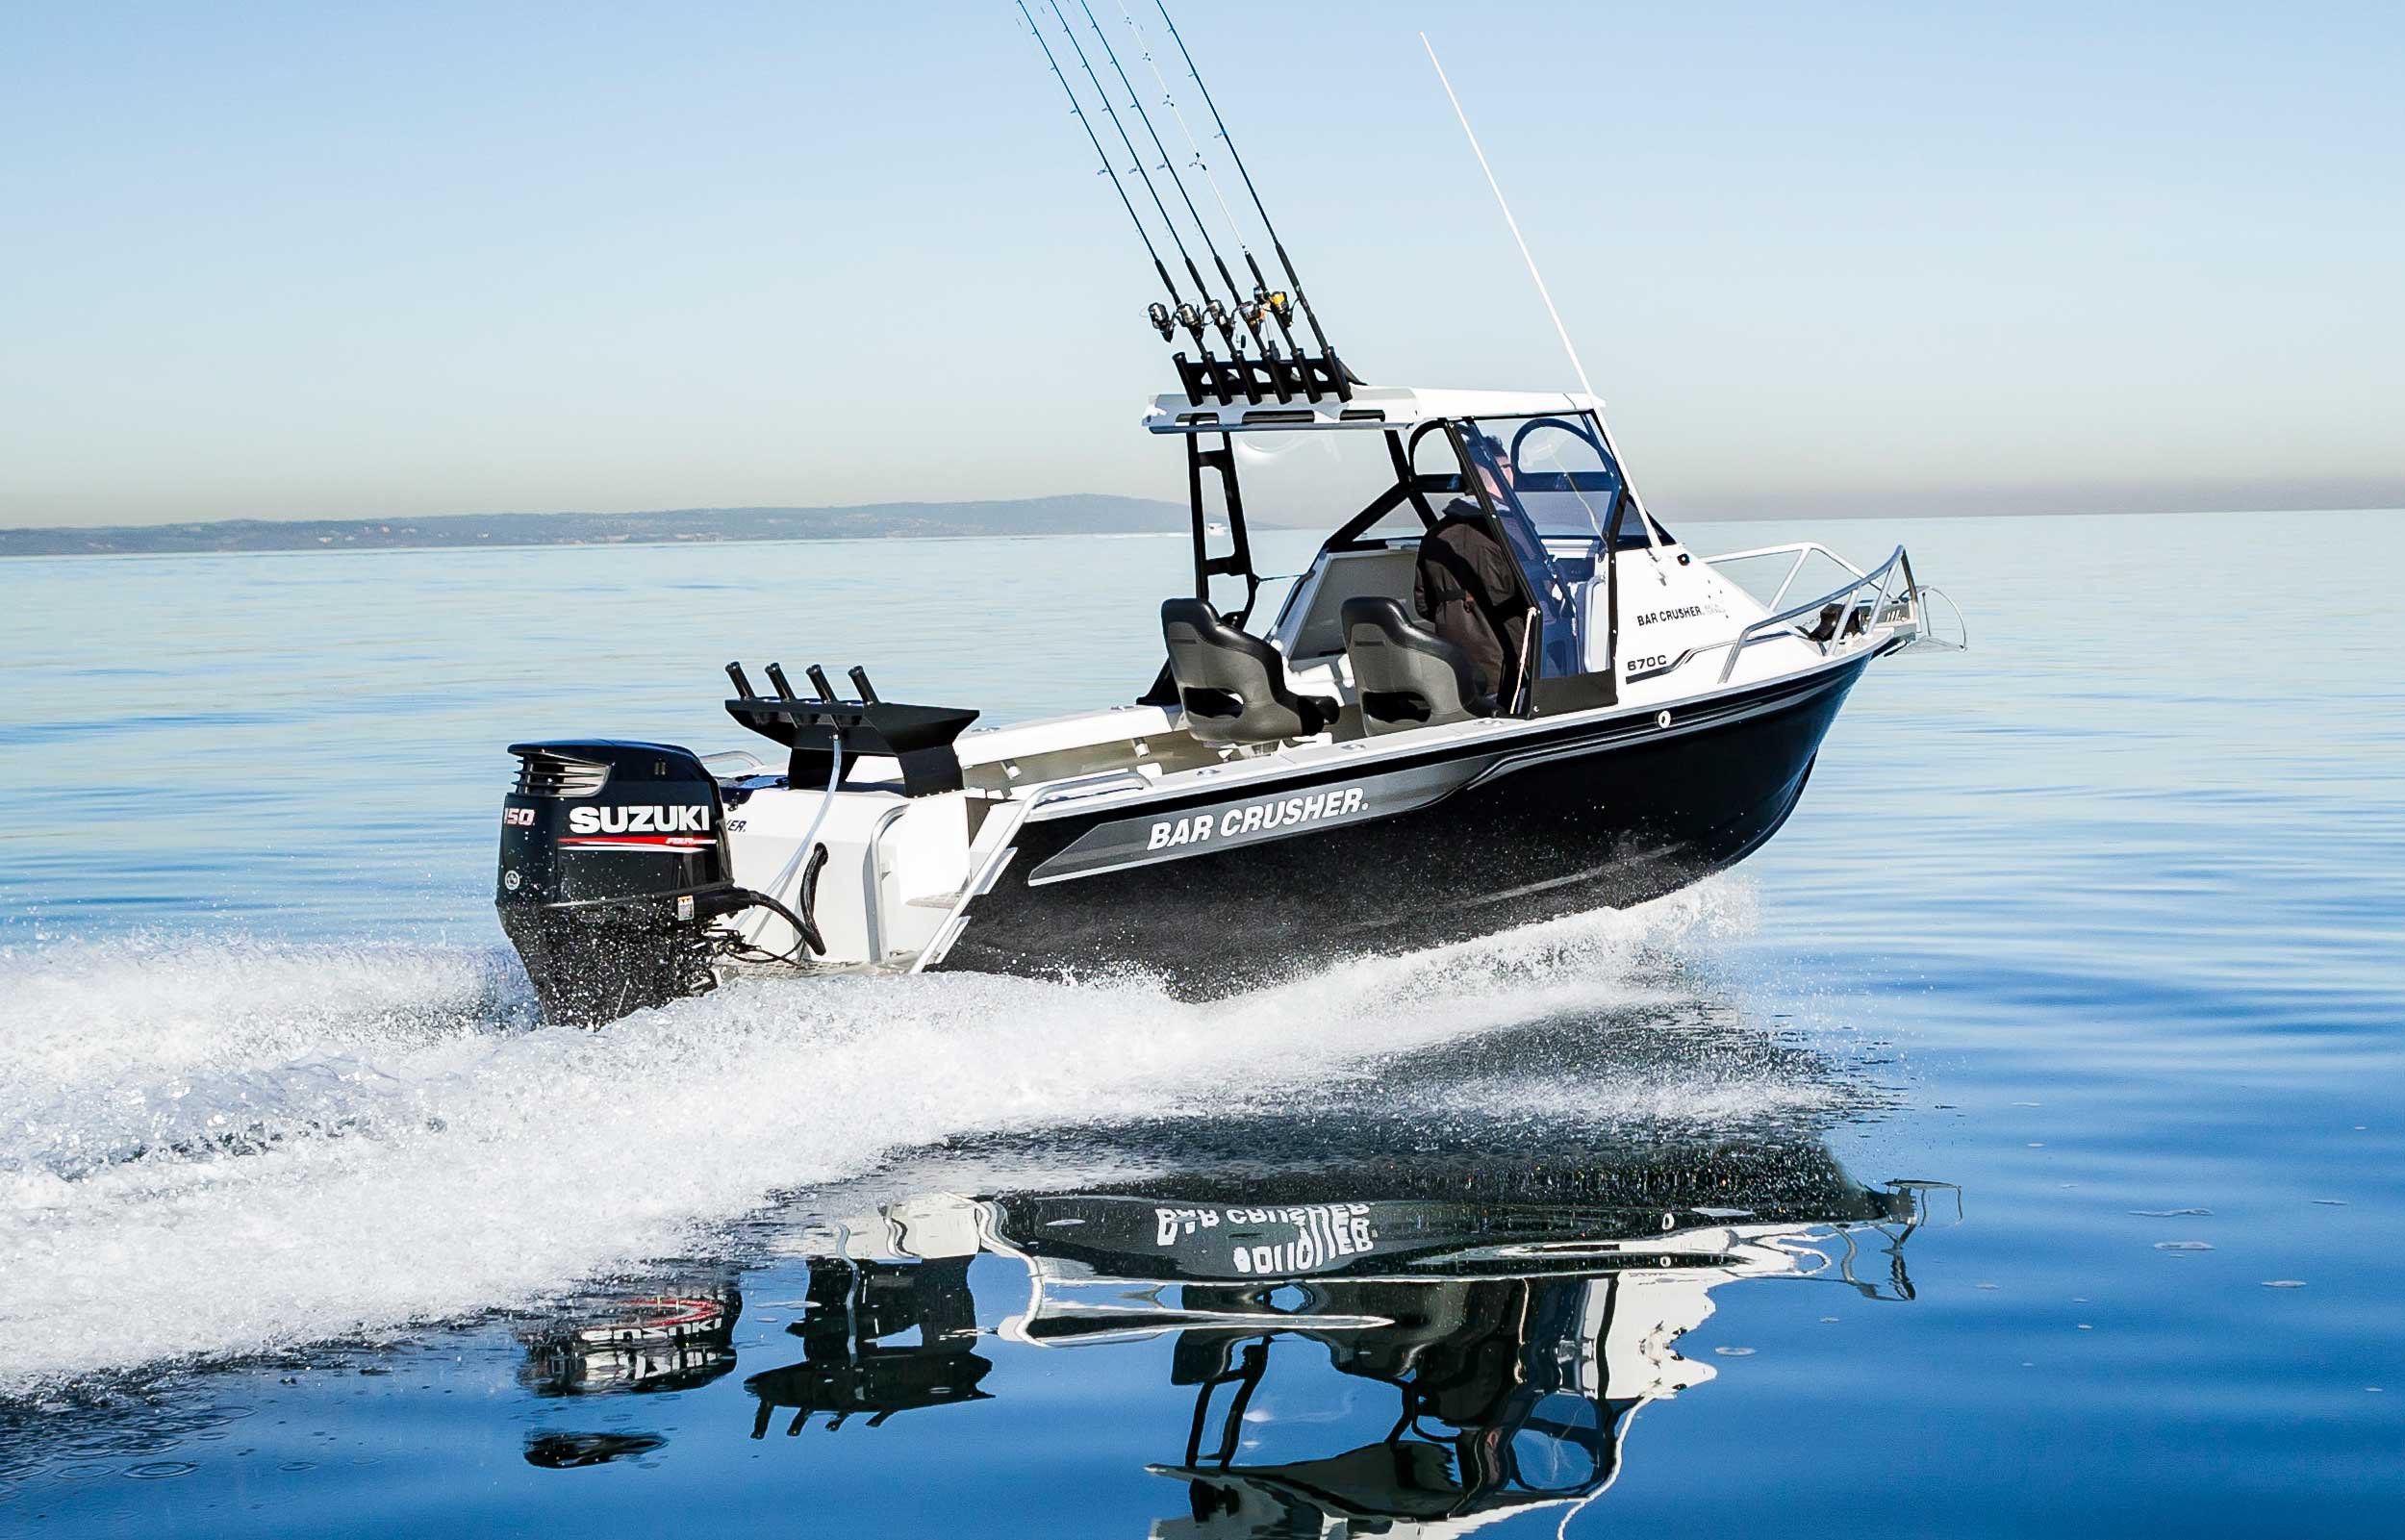 models-bar-crusher-670c-plate-aluminium-fishing-boat-2019-web-5